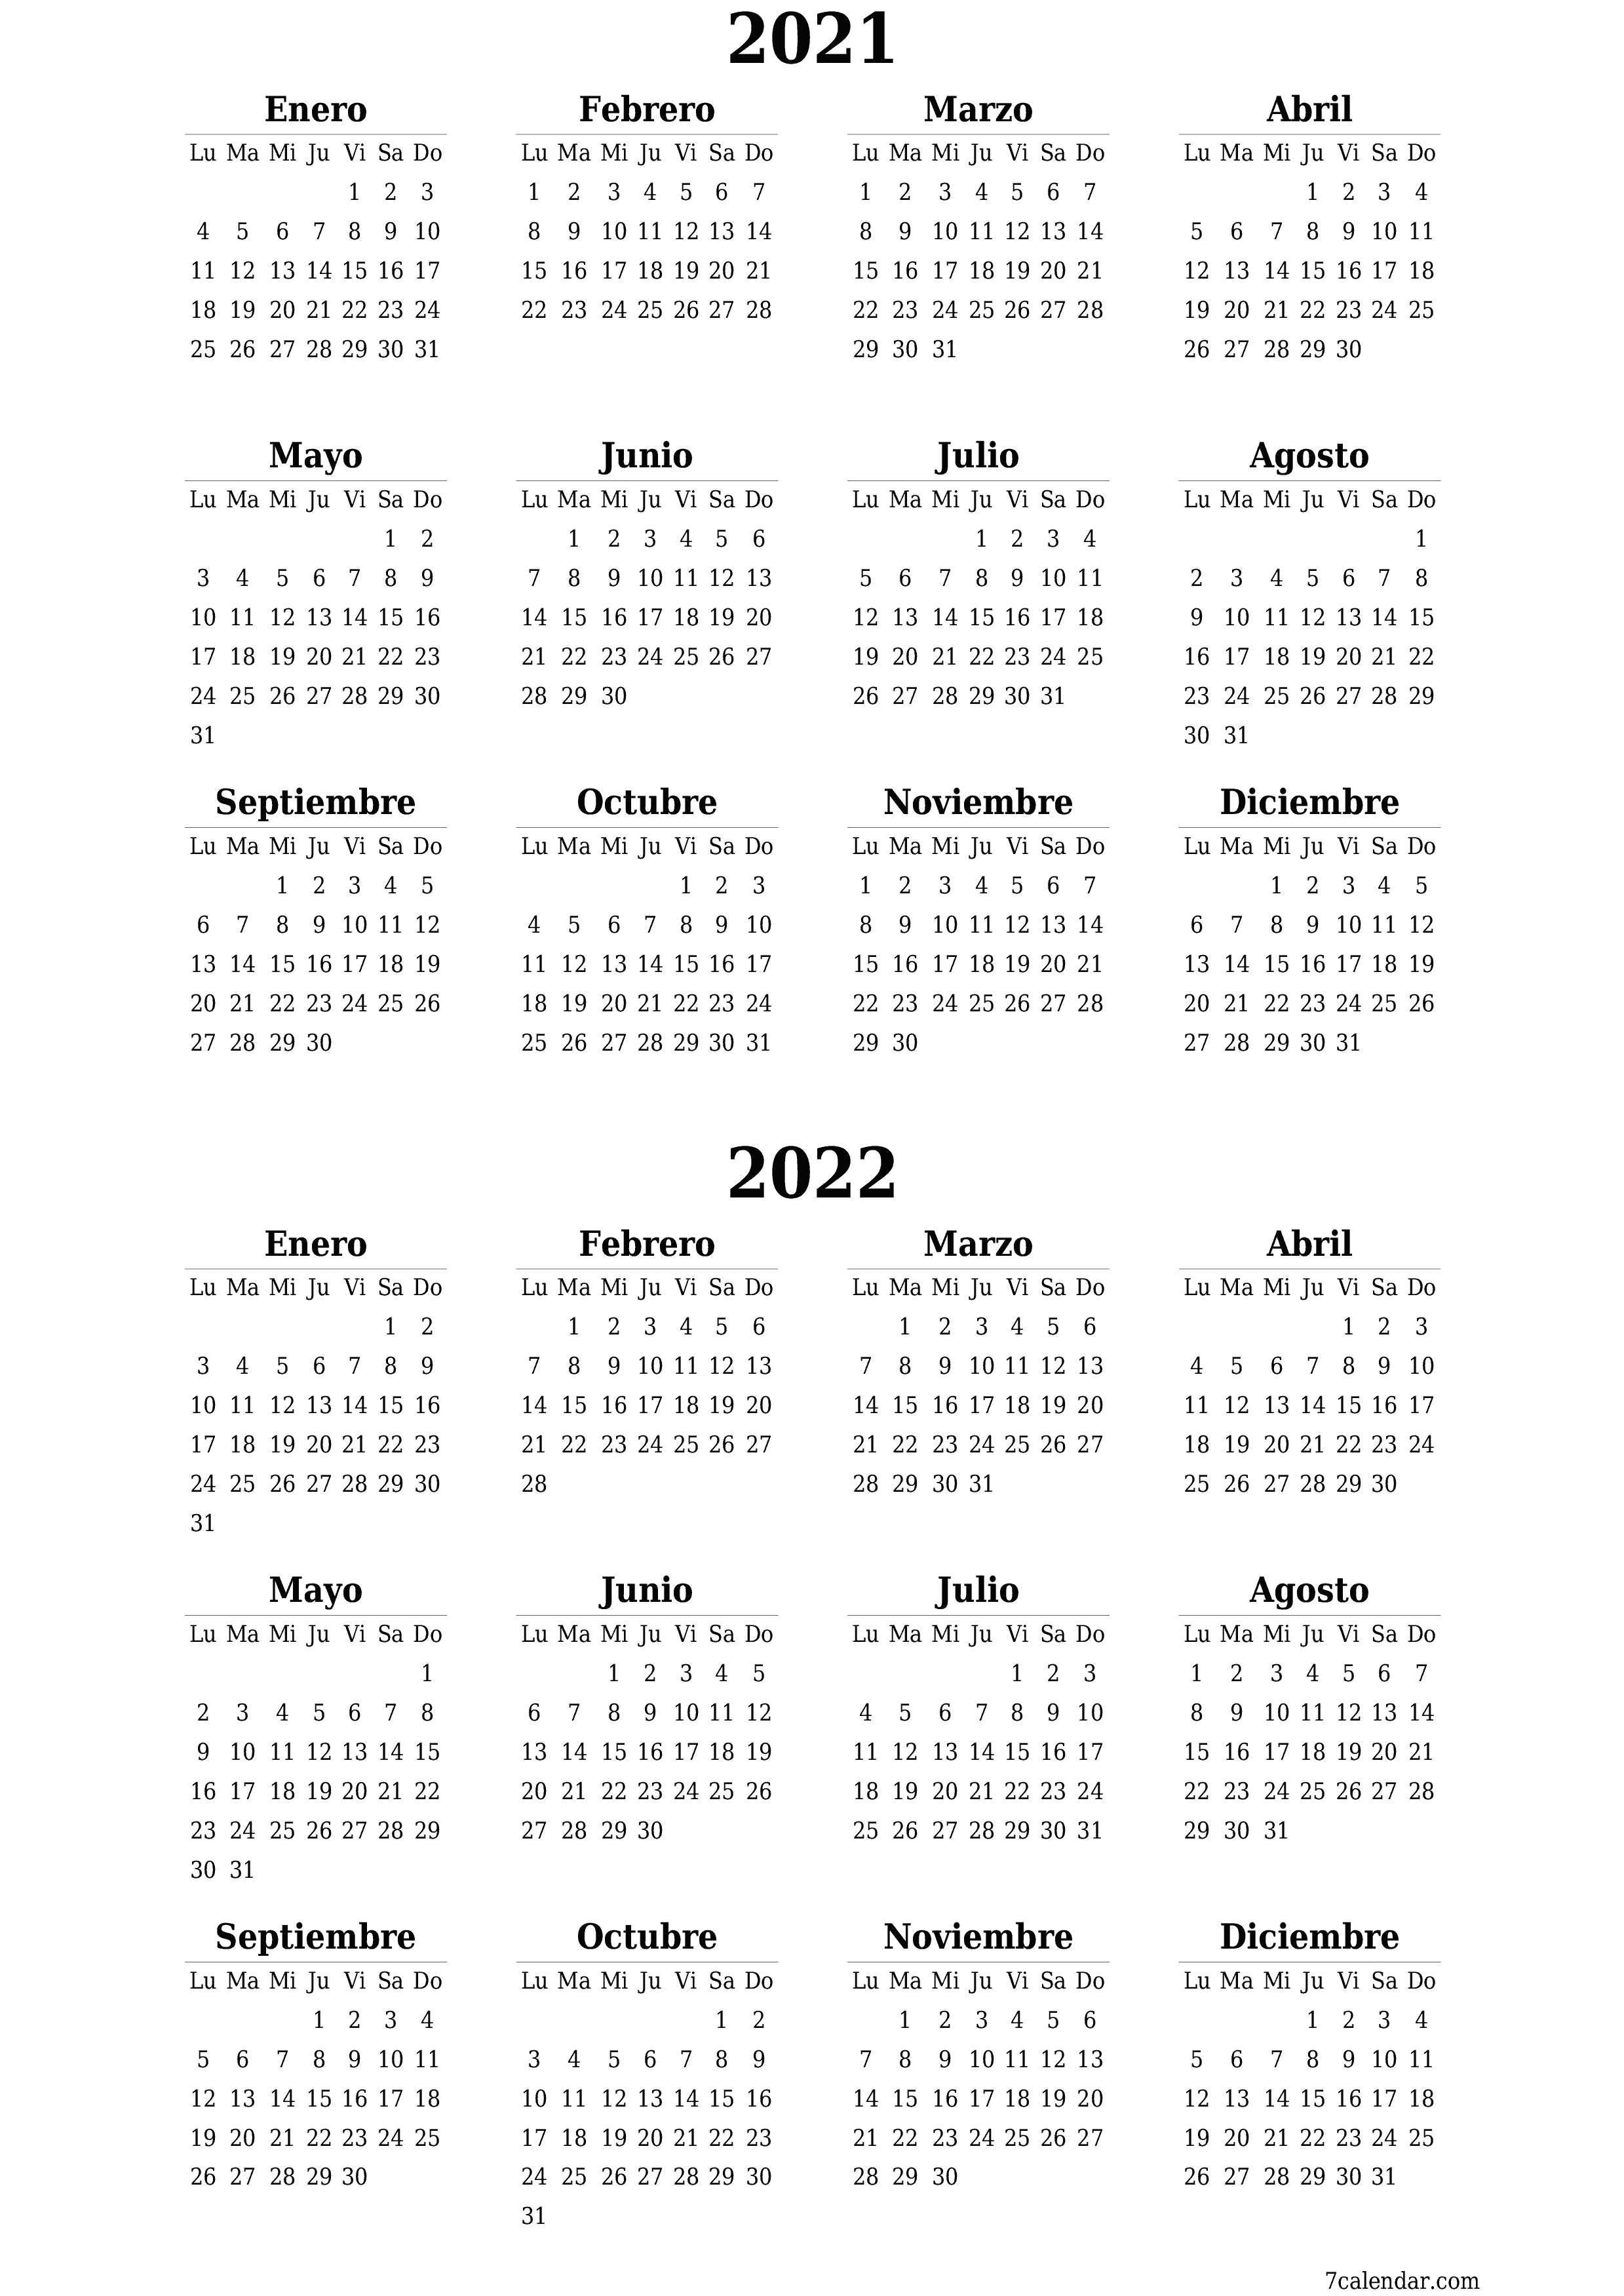  imprimible de pared plantilla de gratisvertical Anual calendario Noviembre (Nov) 2021